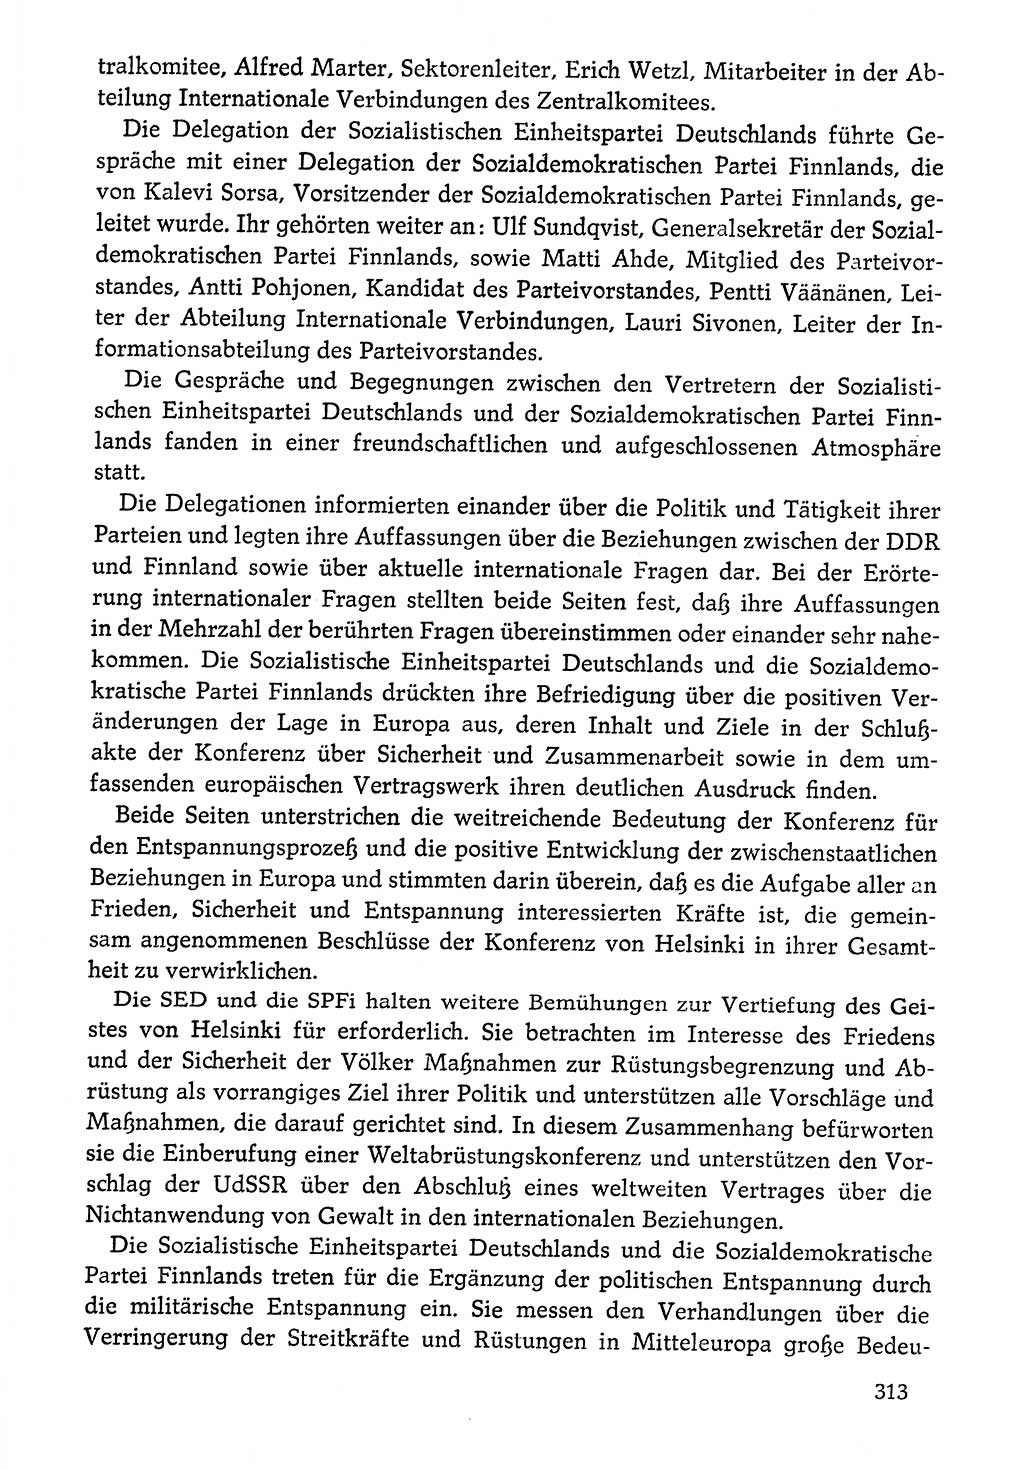 Dokumente der Sozialistischen Einheitspartei Deutschlands (SED) [Deutsche Demokratische Republik (DDR)] 1976-1977, Seite 313 (Dok. SED DDR 1976-1977, S. 313)